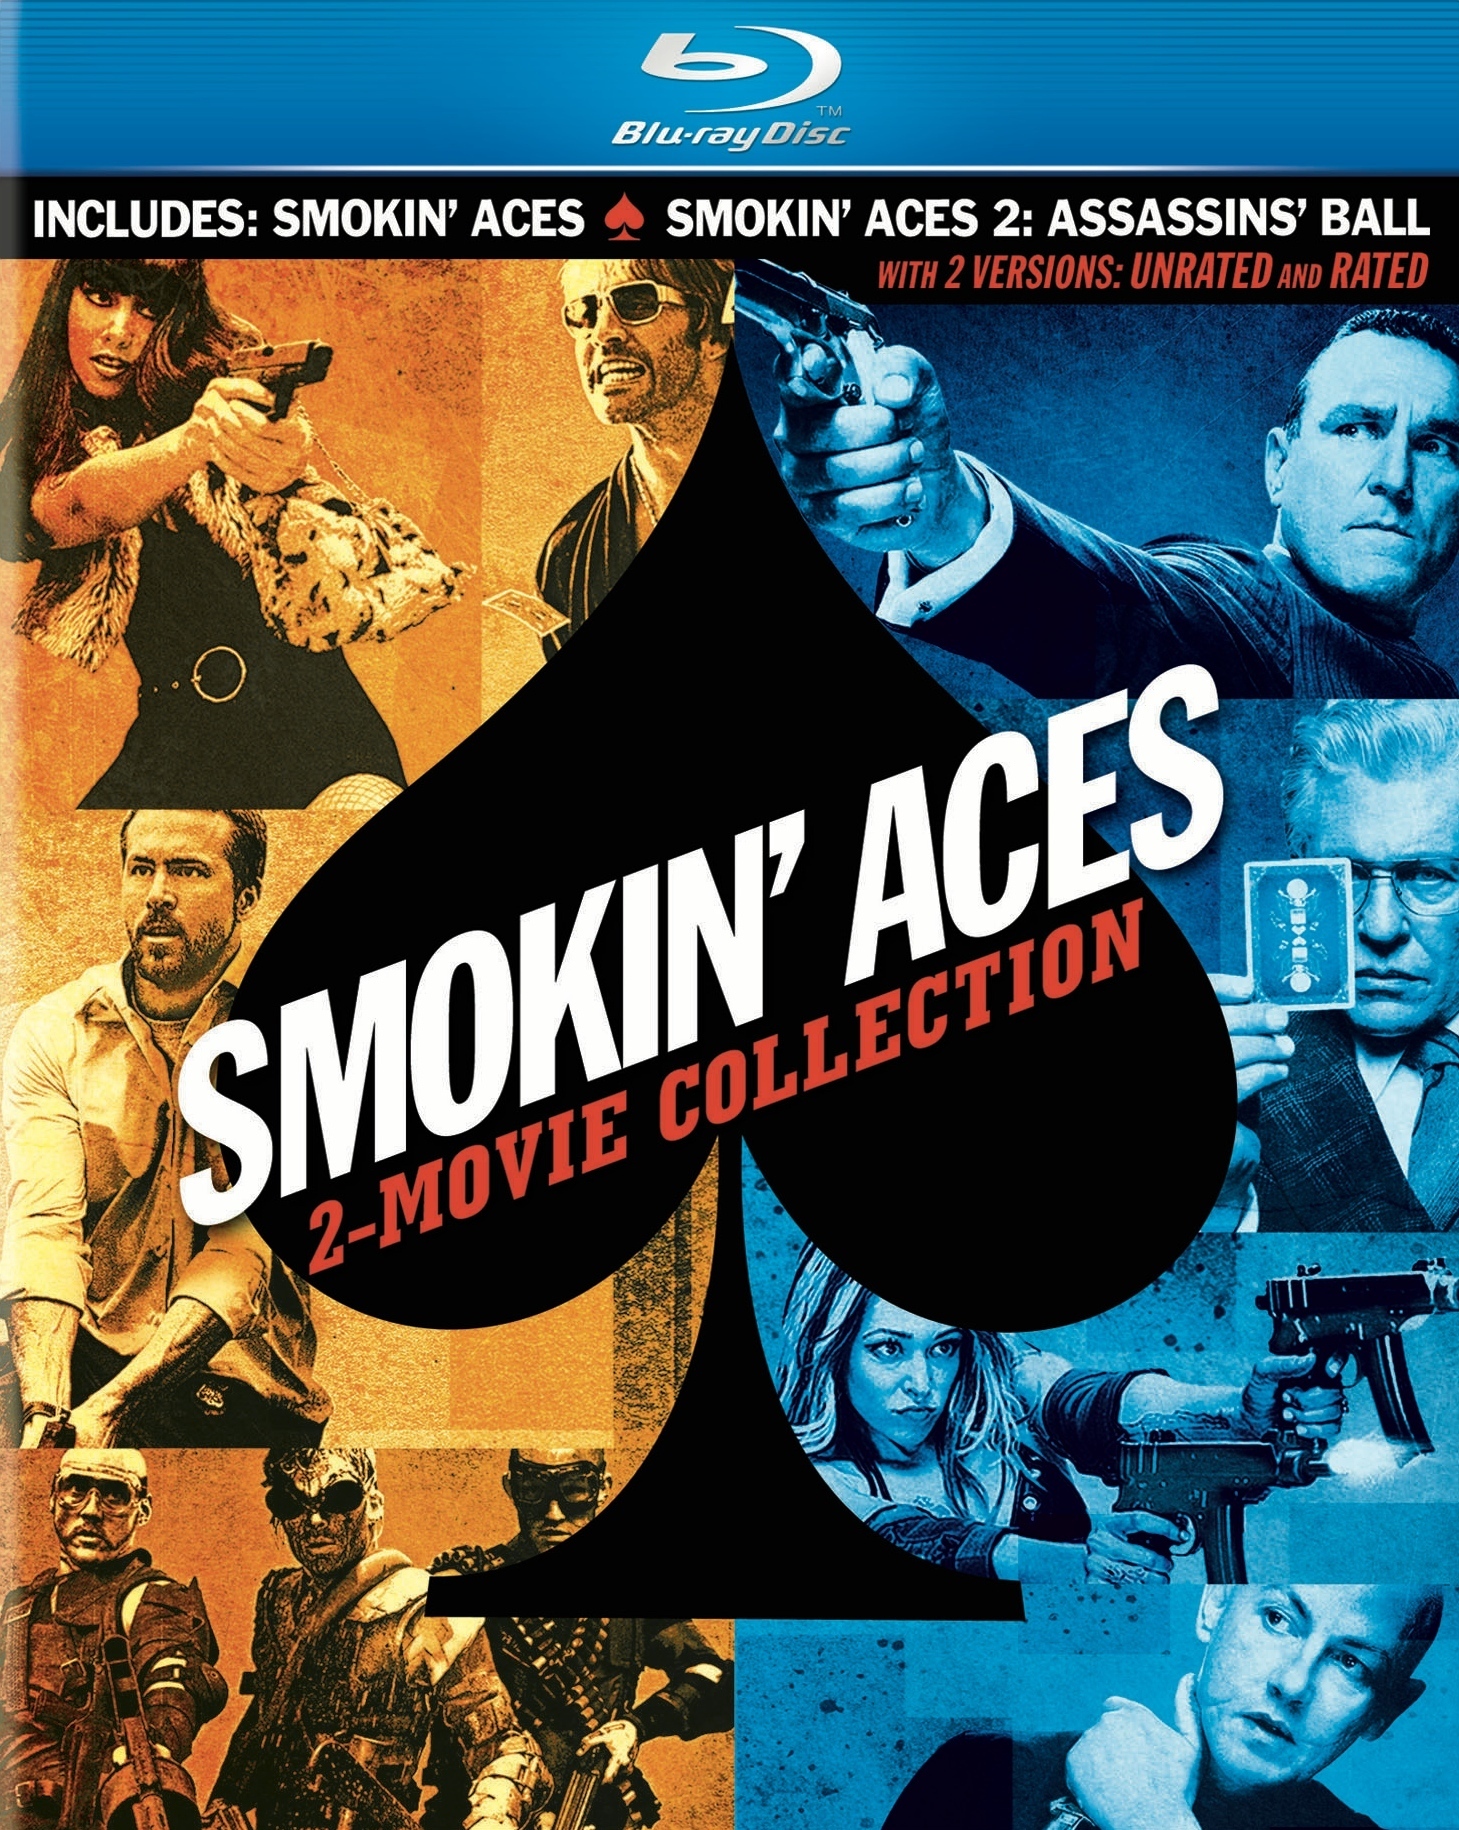 Smokin' Aces: 2-Movie Collection (2006-2010) La Última Carta: Colección de 2 Películas (2006-2010) Ases Calientes: Colección de 2 Películas (2006-2010) [AC3 5.1 + SRT] [DVD-RIP] [GOOGLEDRIVE*] 9655_front